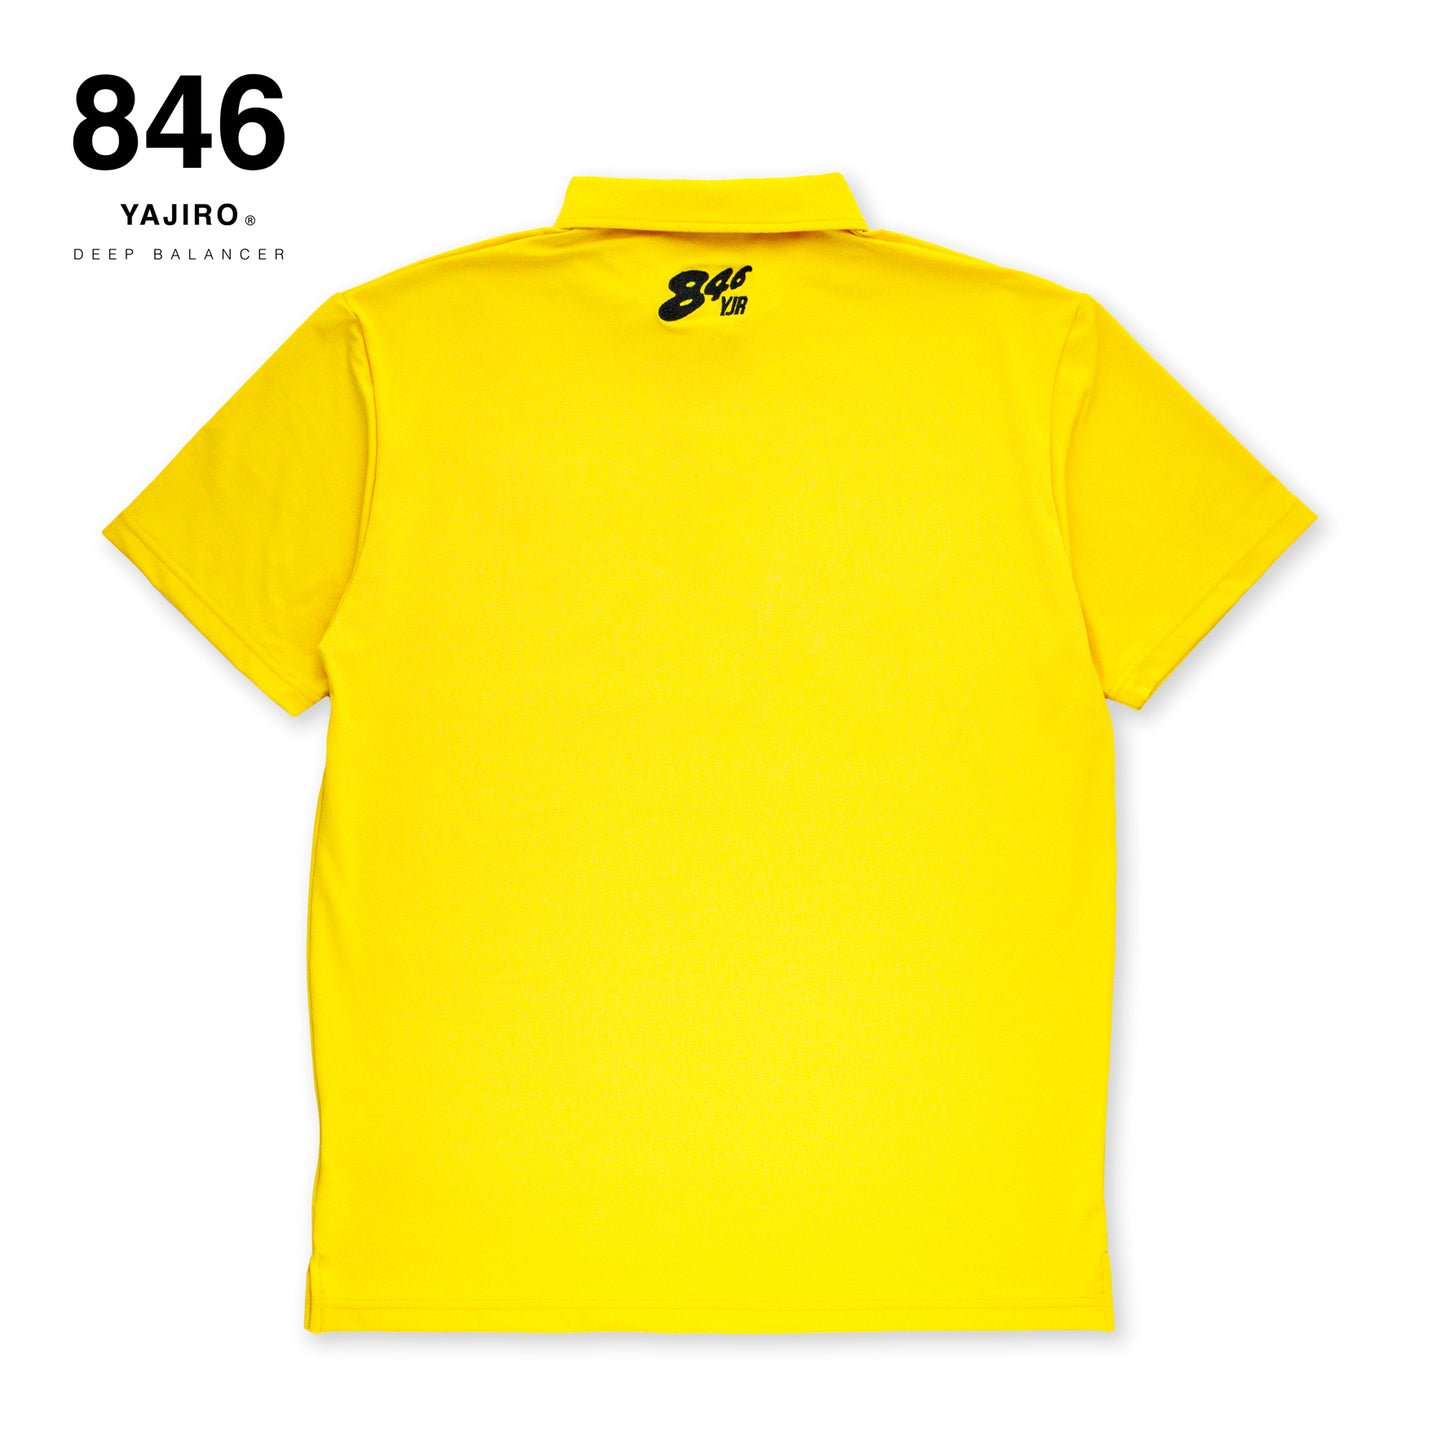 846YAJIRO GOLF Polo shirt YELLOW (Unisex)